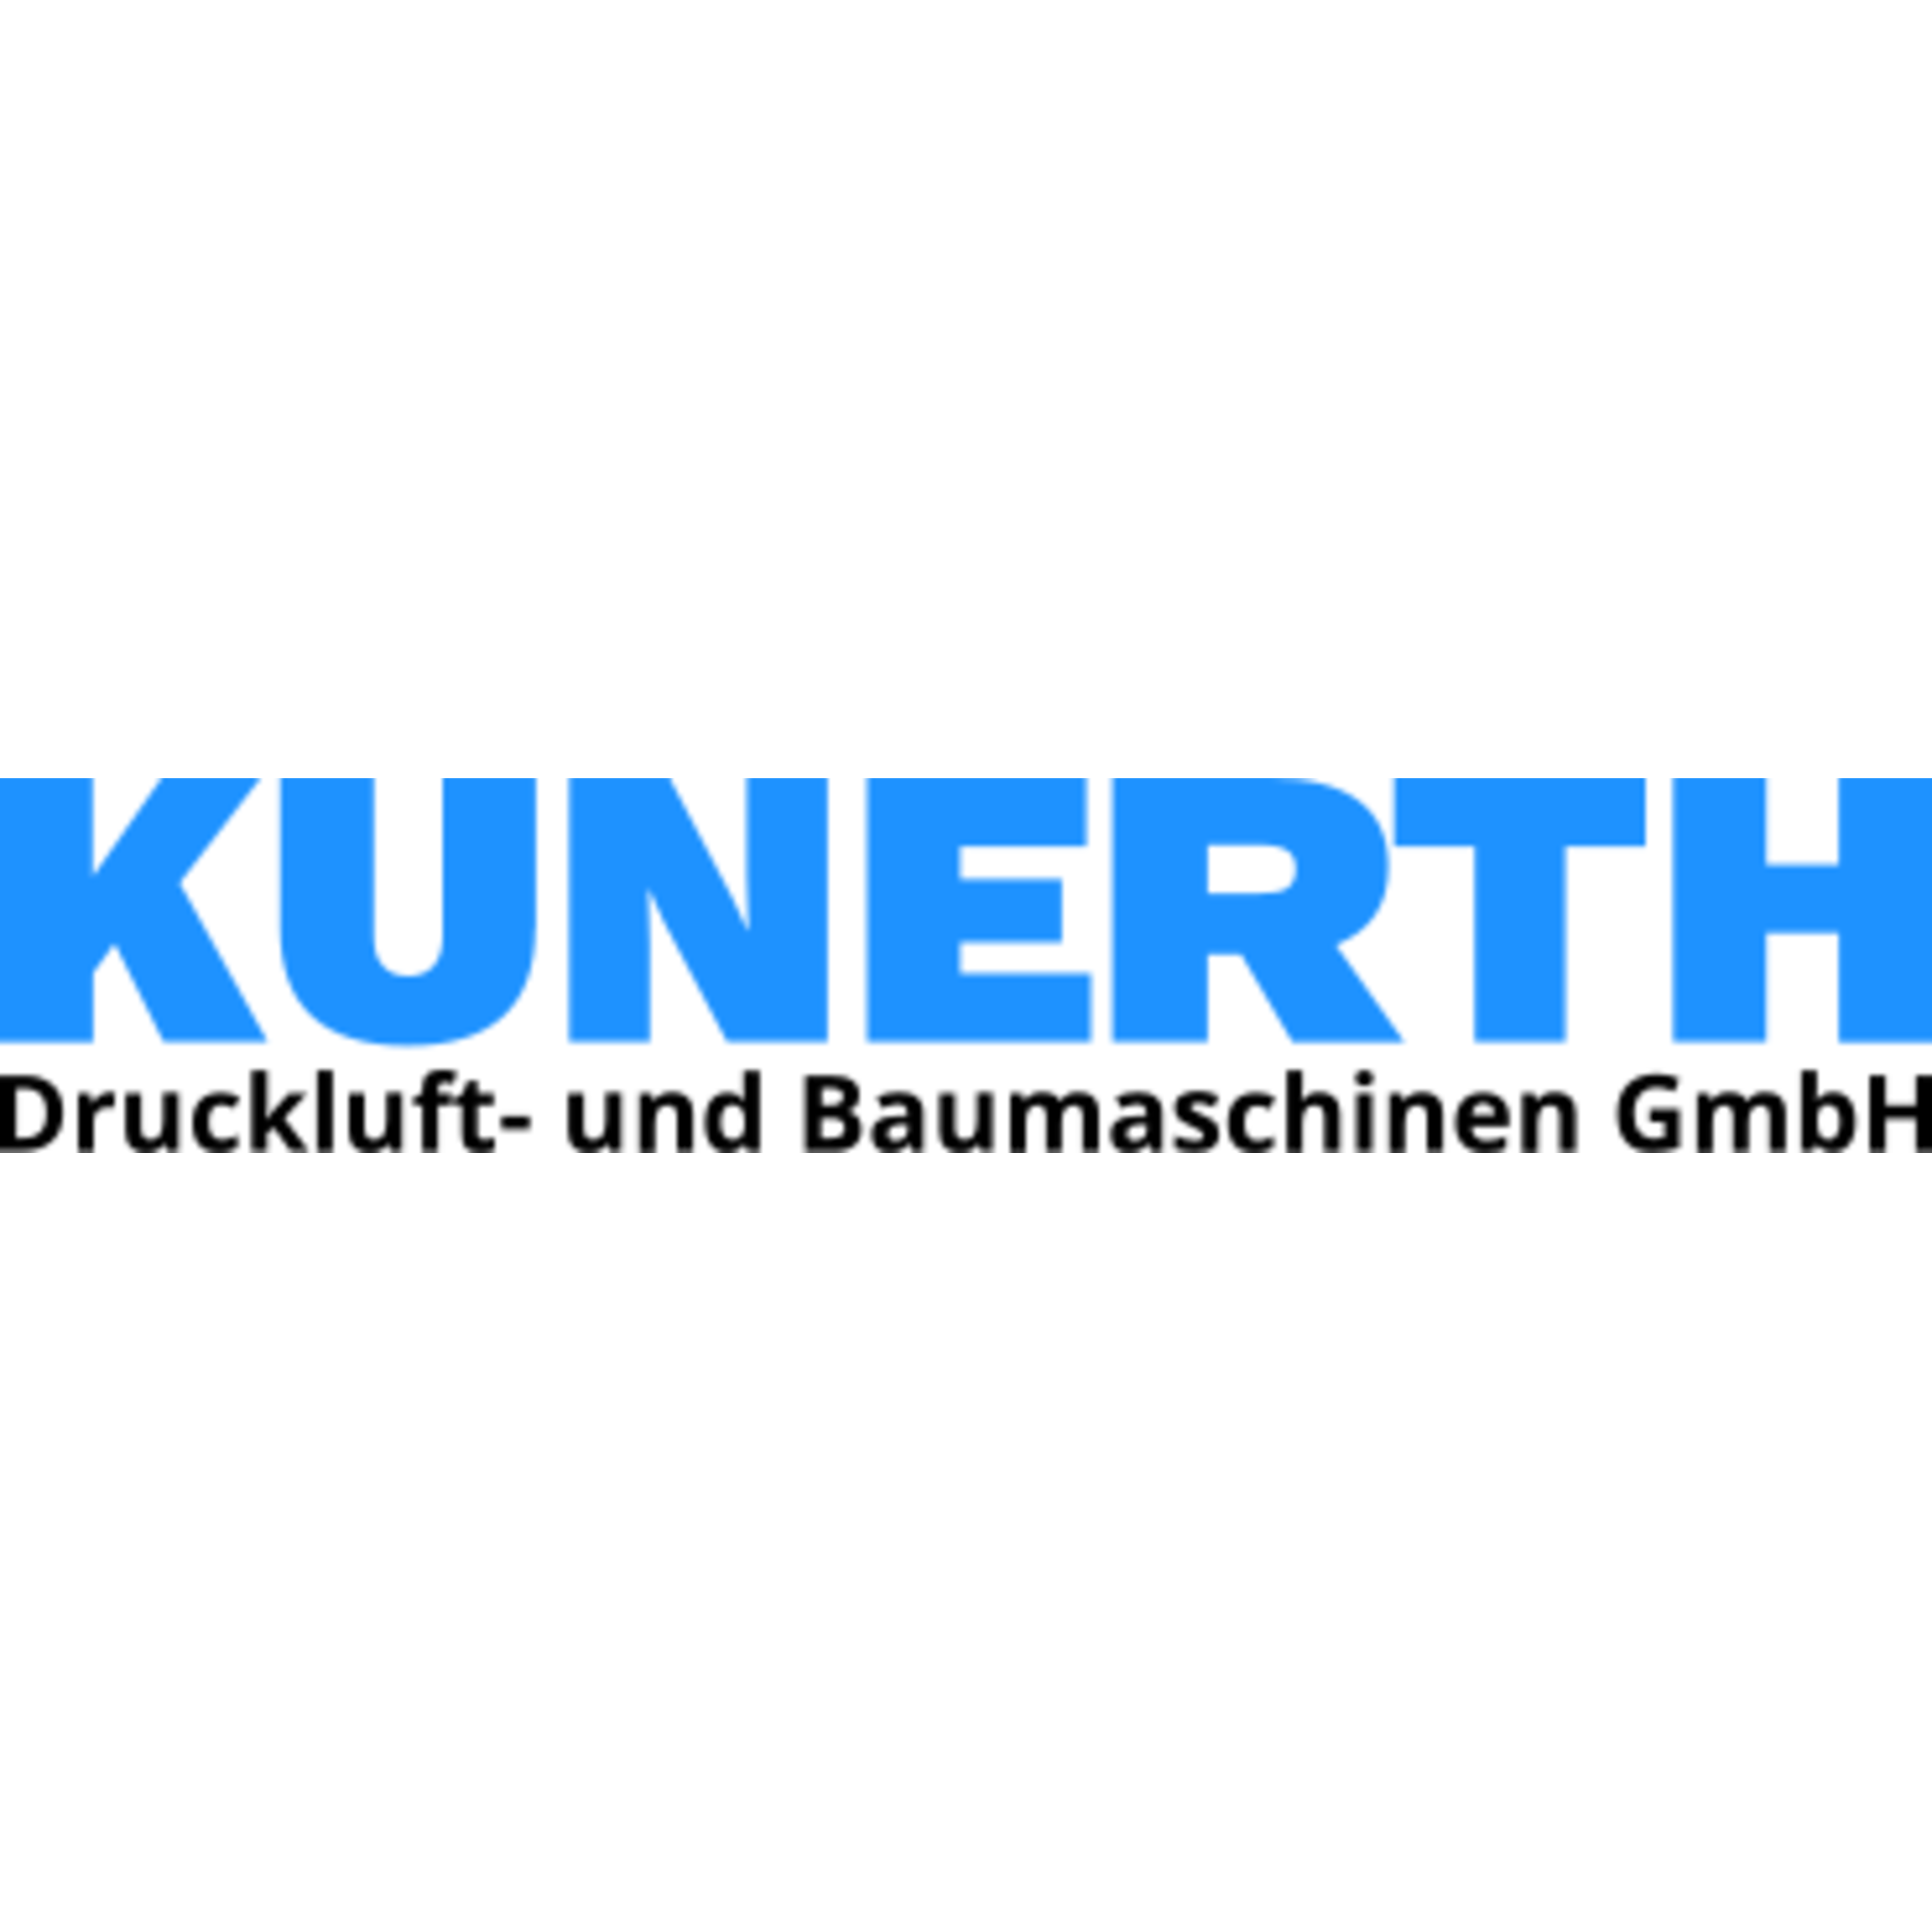 Kunerth Druckluft + Baumaschinen GmbH